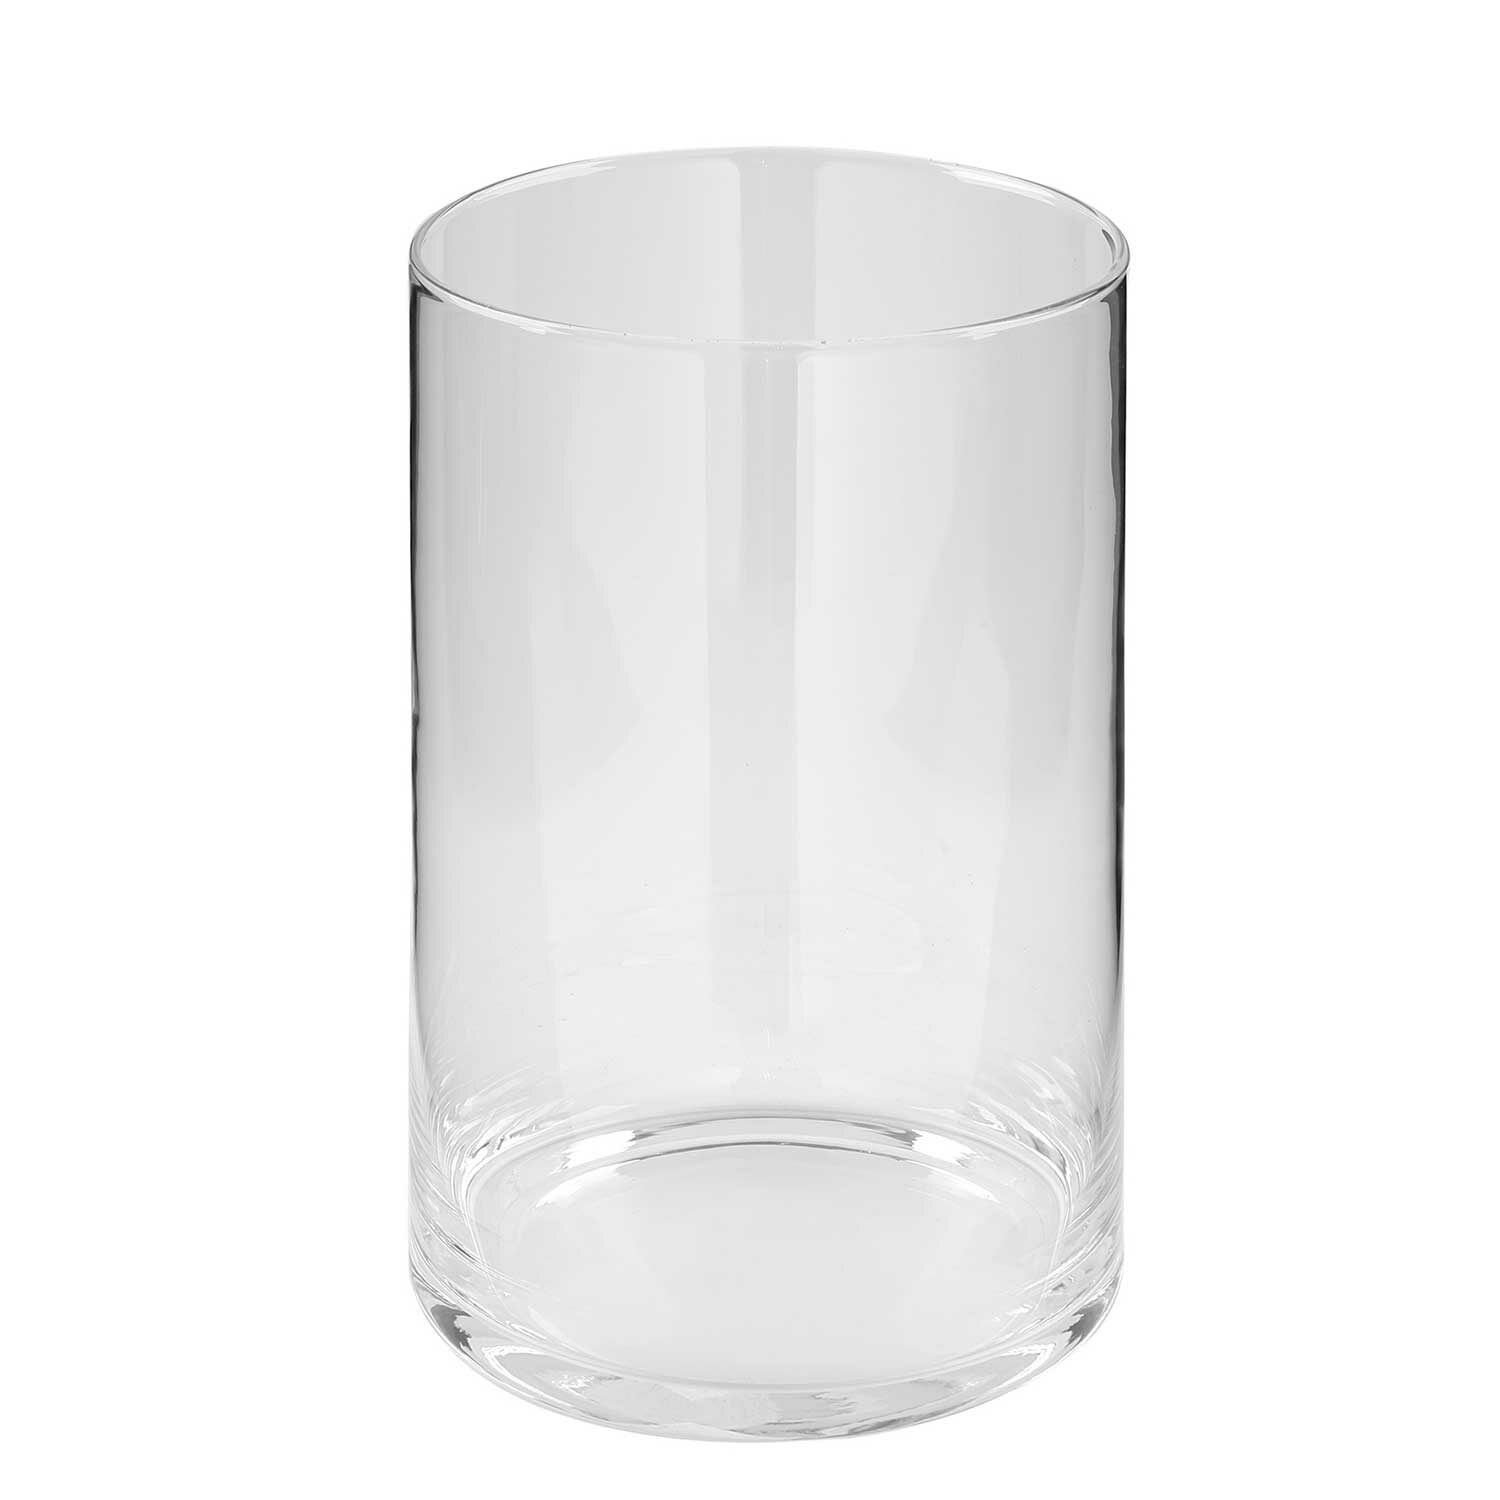 GORDEN glass cylinder